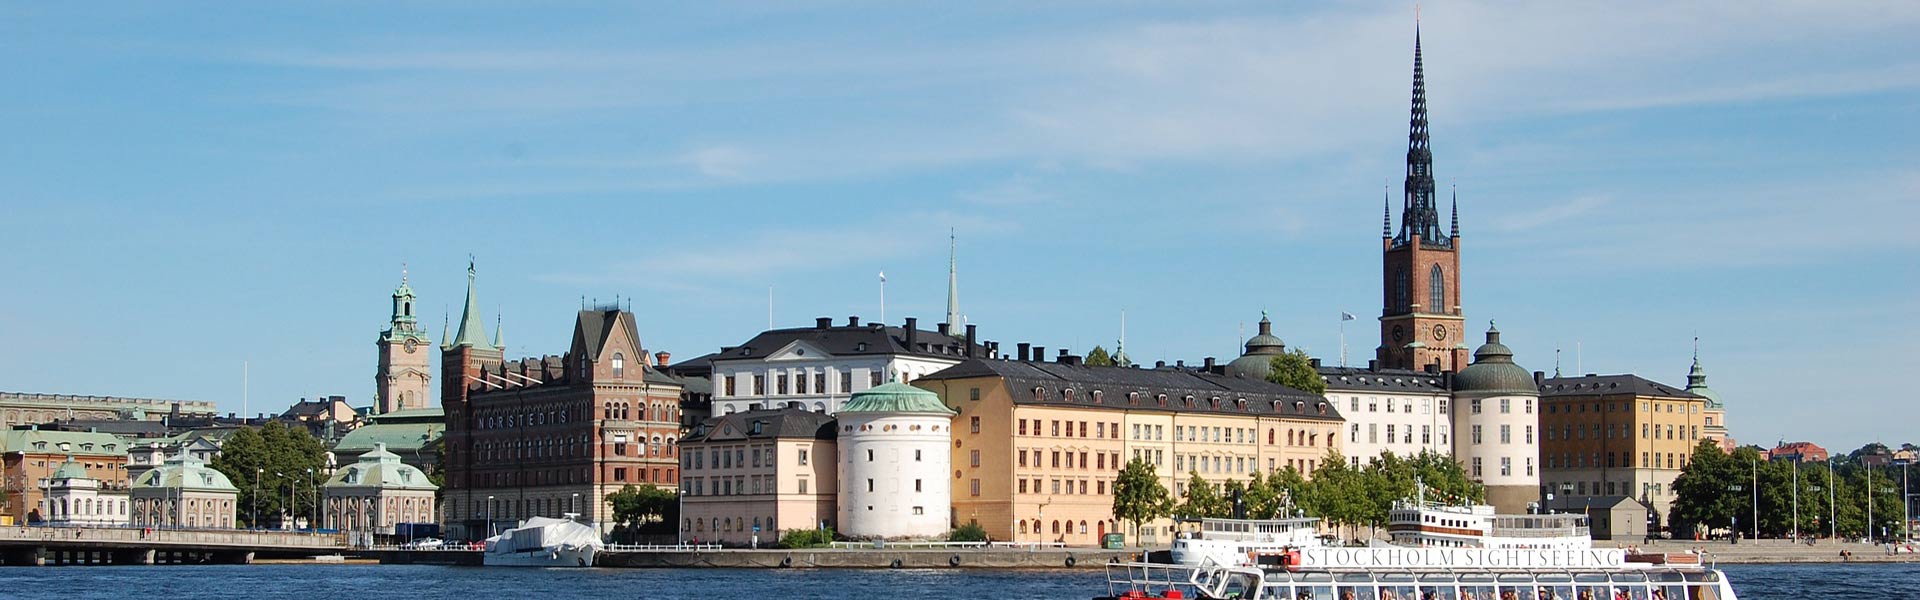 Städfirma Stockholm | Städfirma Stadshagen